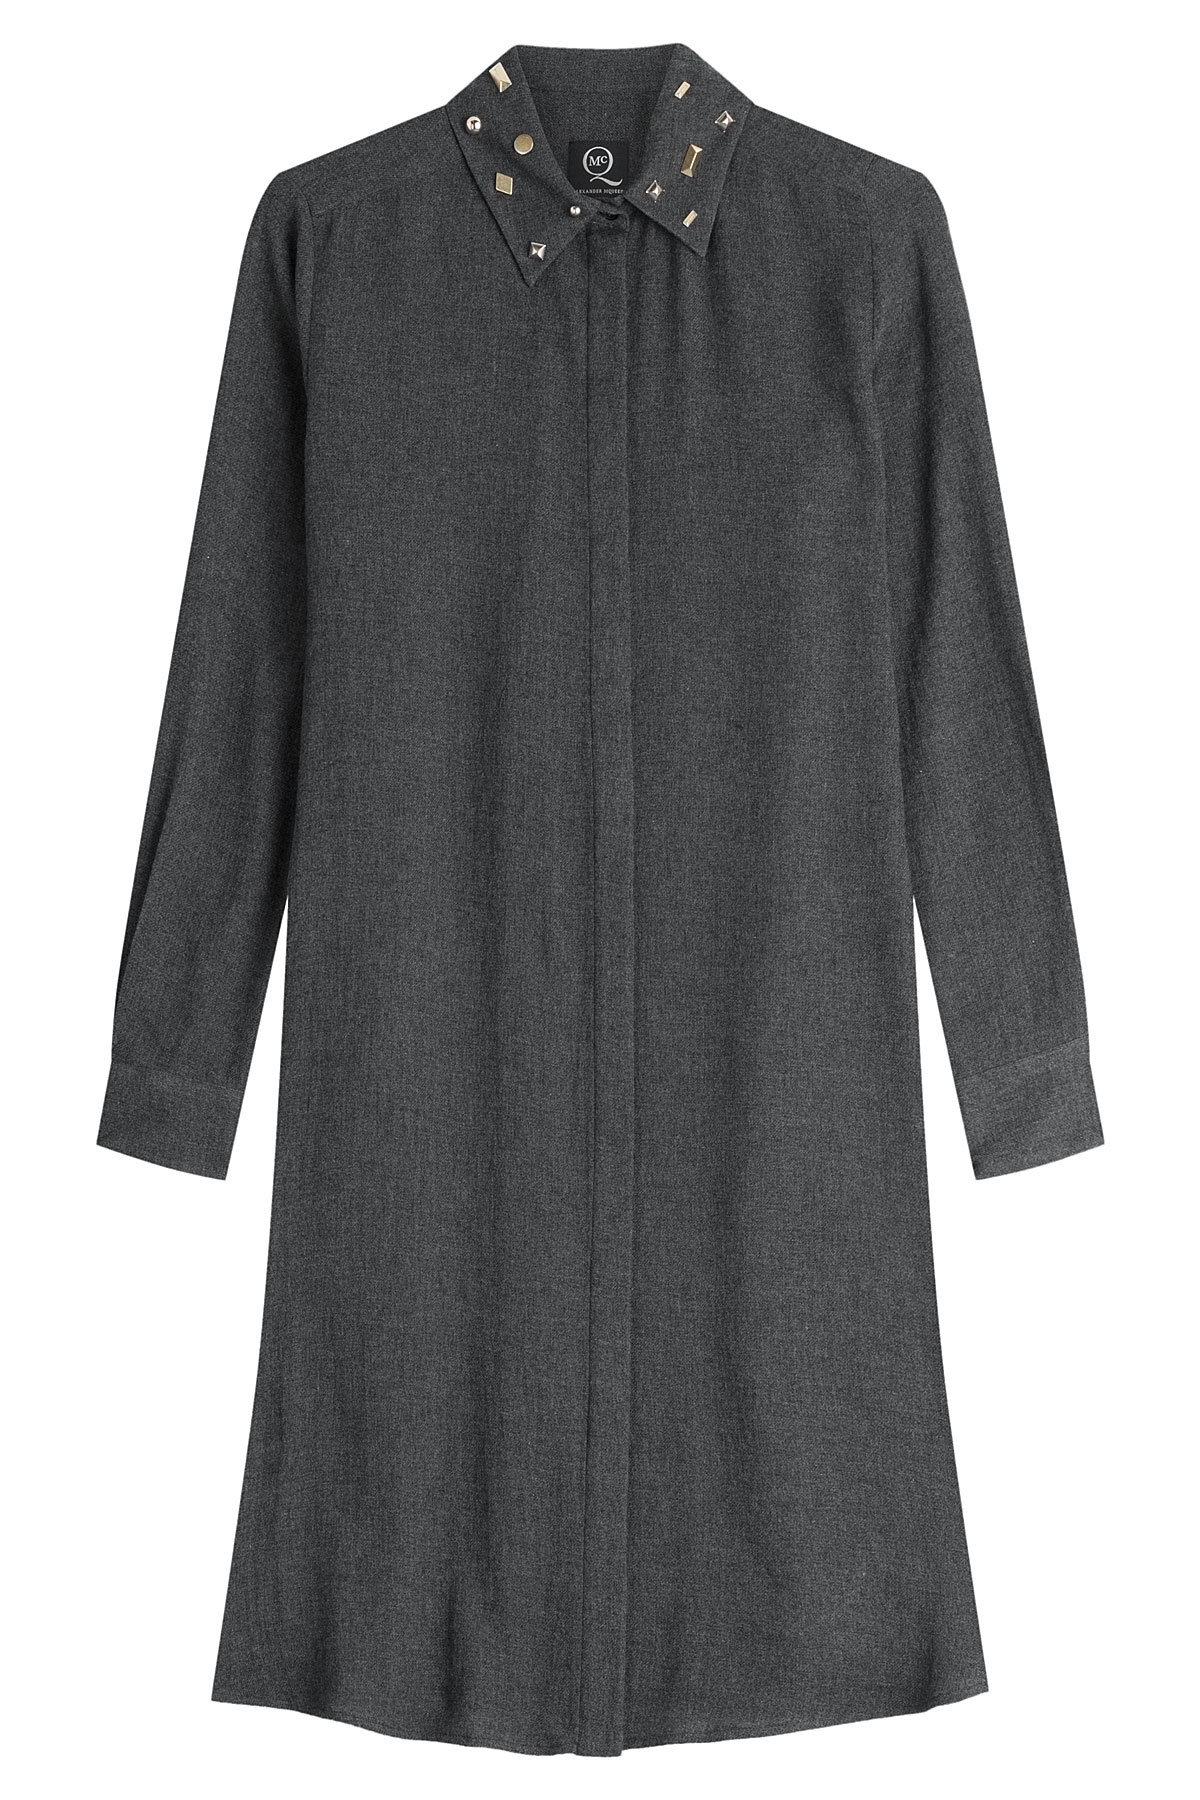 McQ Alexander McQueen - Shirt Dress with Wool